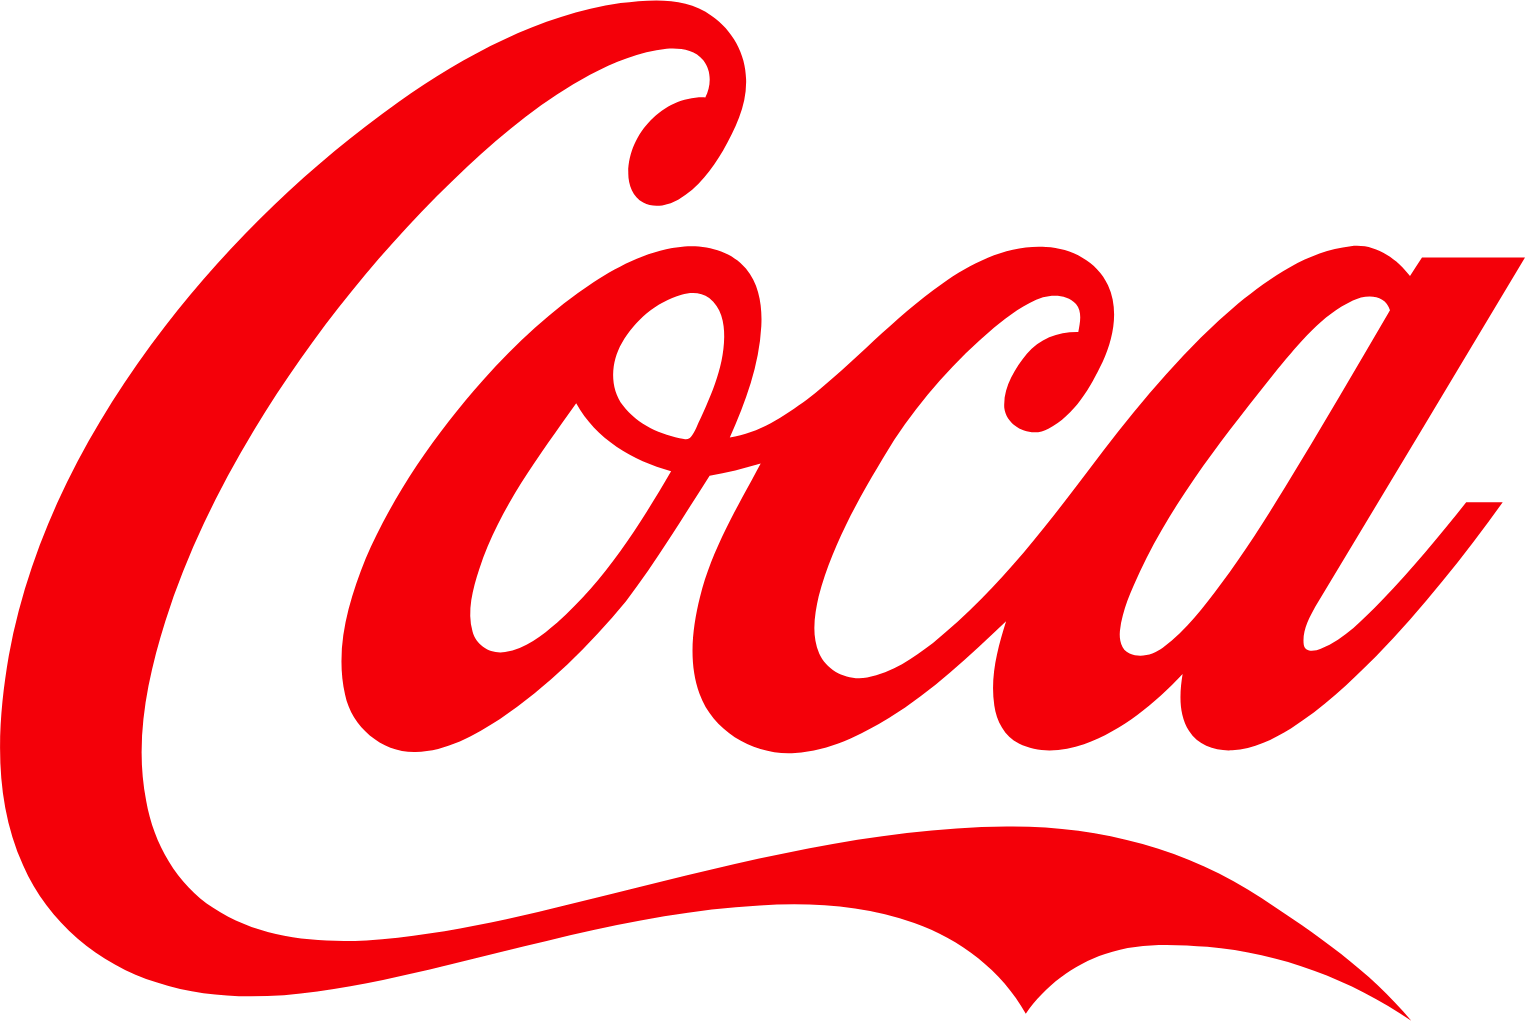 Coca-Cola Bottlers Japan logo (transparent PNG)